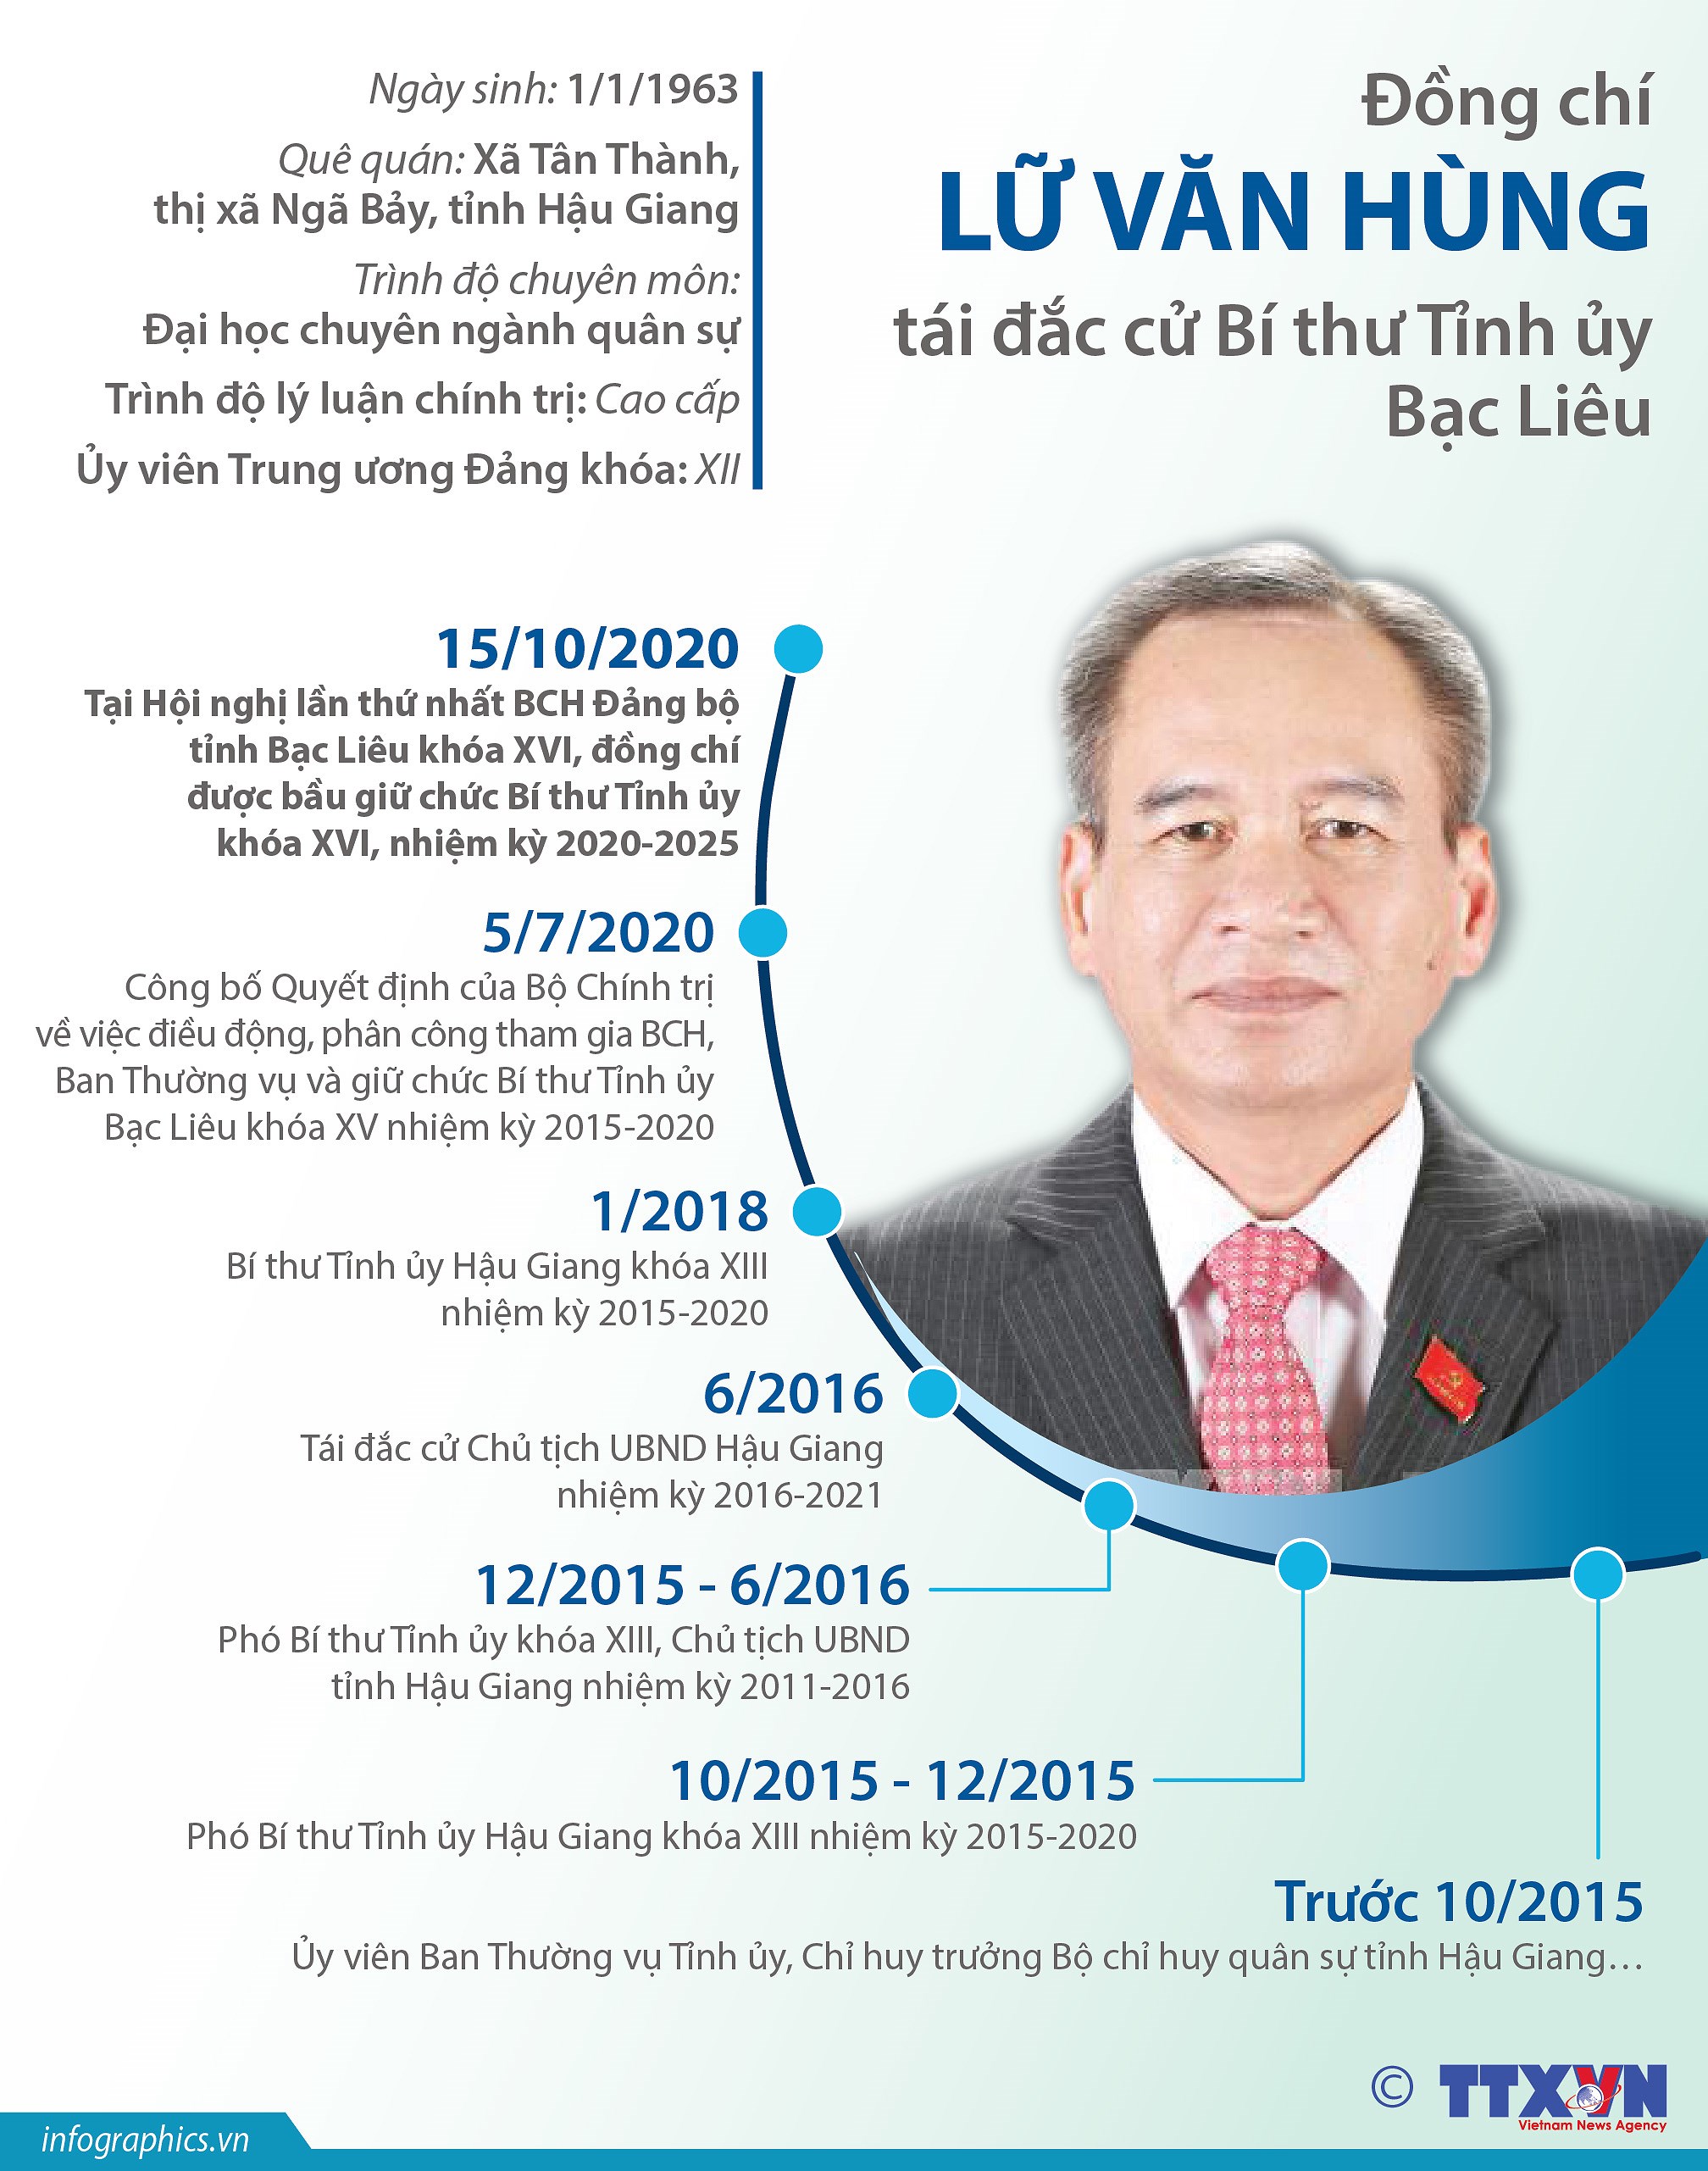 [Infographics] Ong Lu Van Hung tai dac cu Bi thu Tinh uy Bac Lieu hinh anh 1